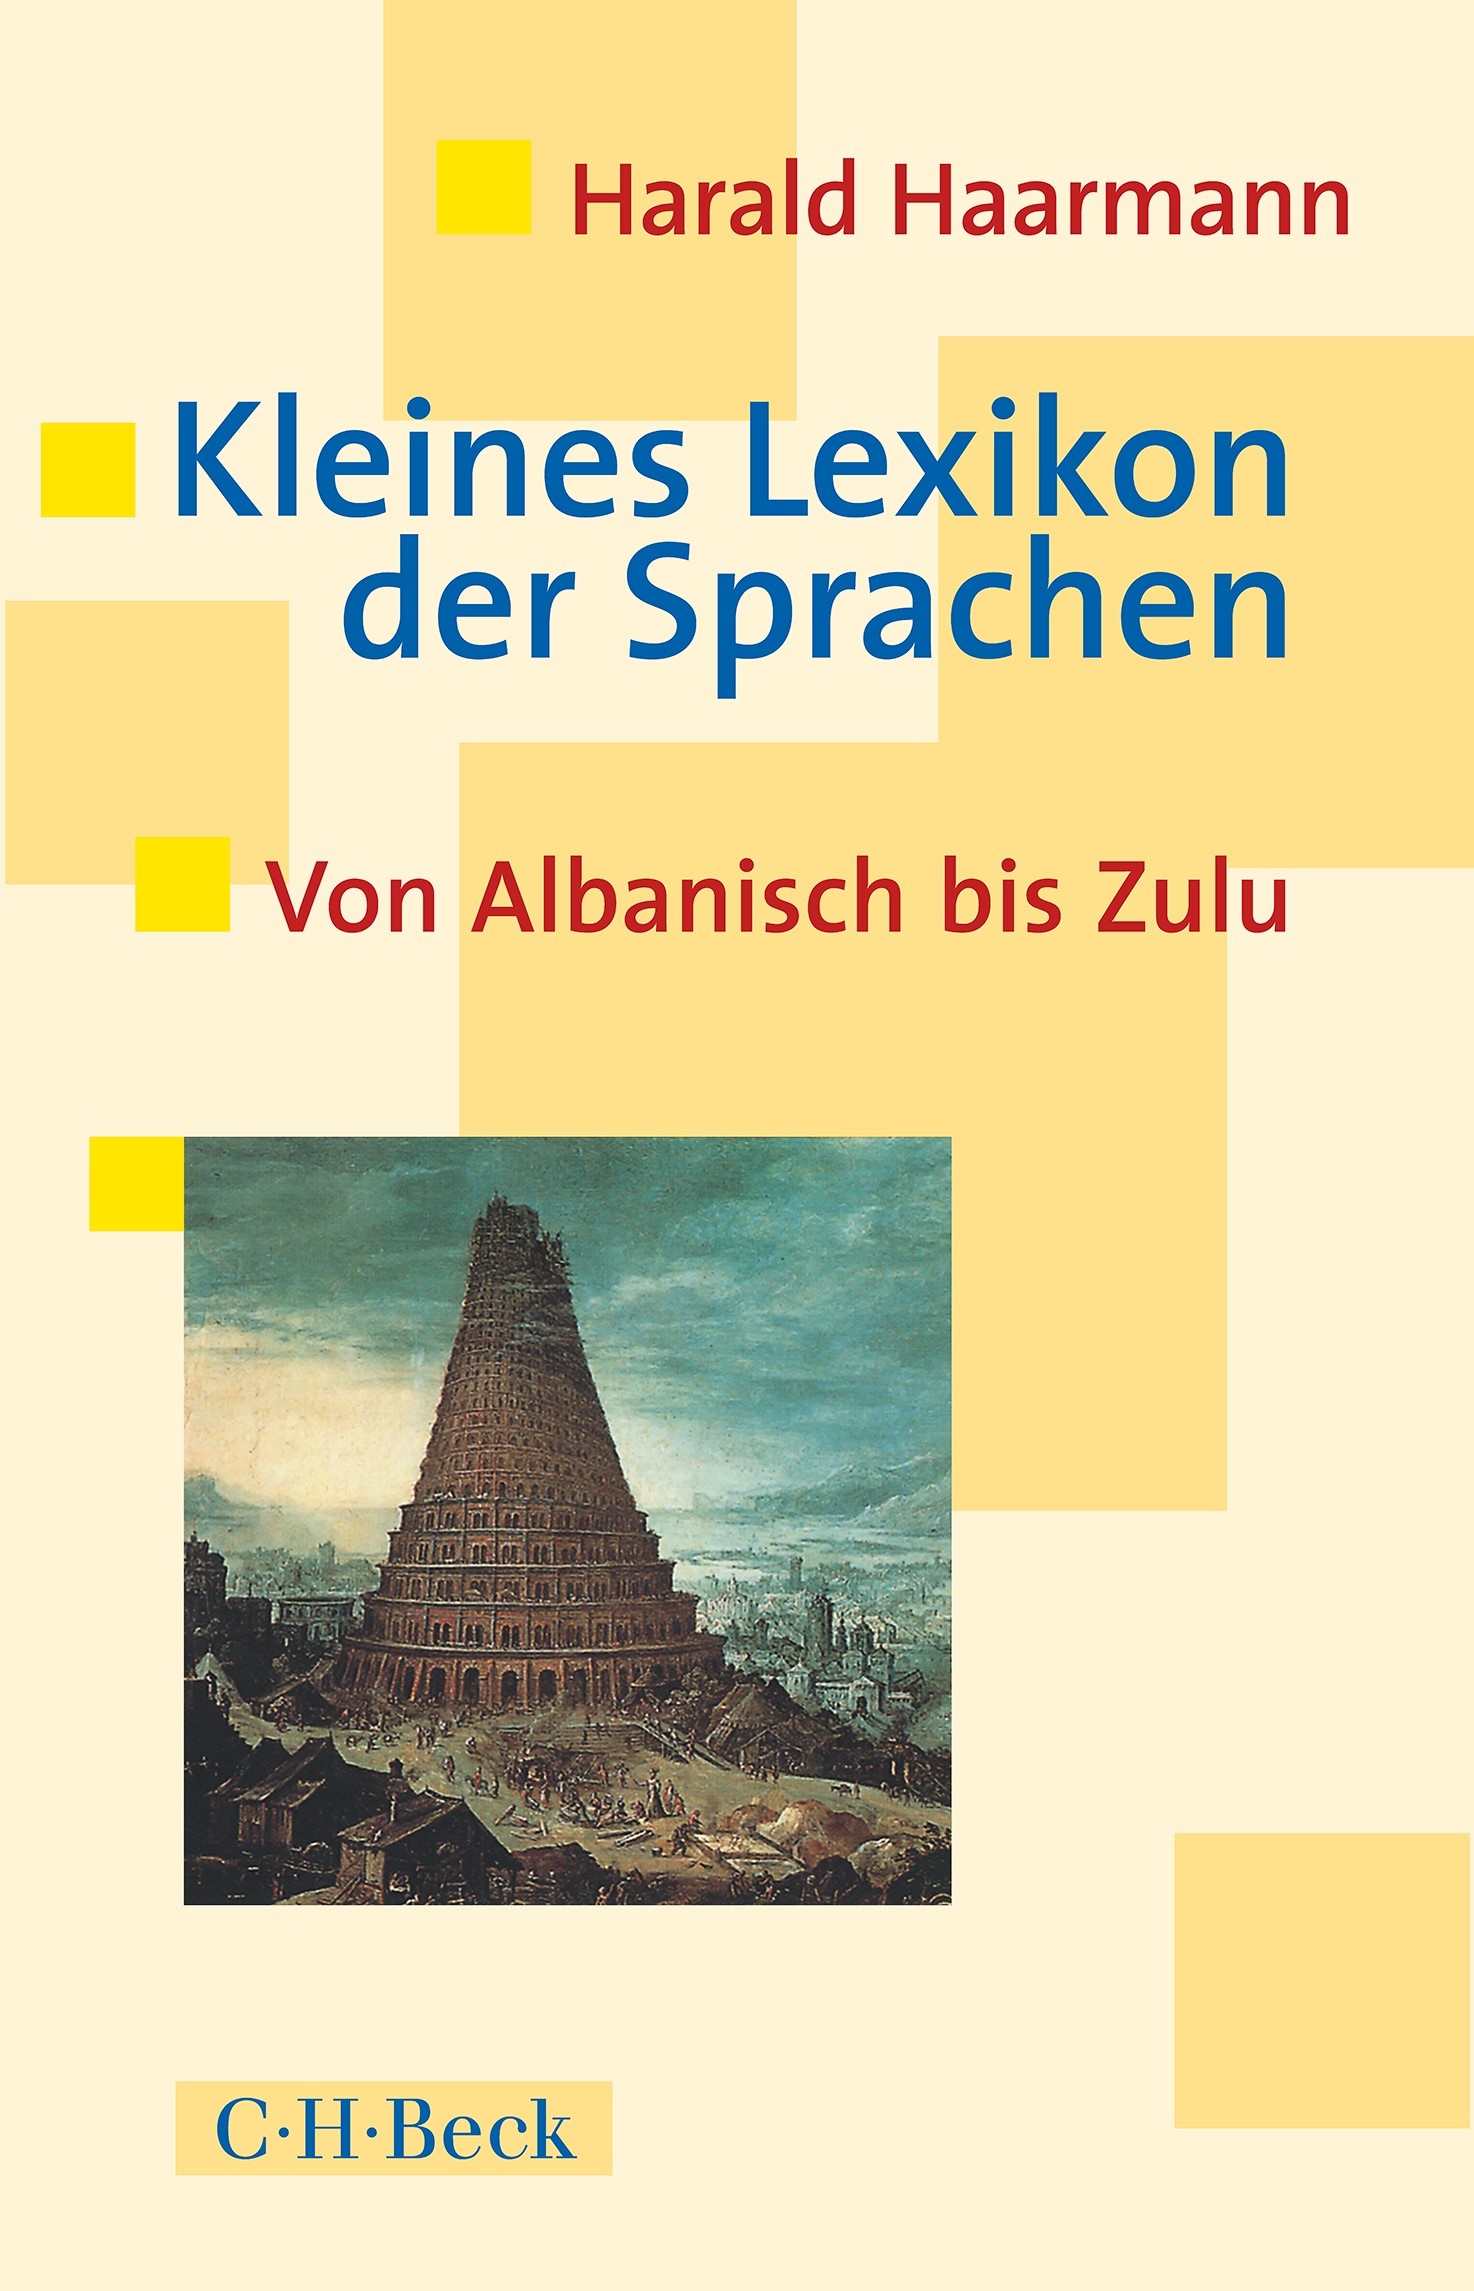 Cover: Haarmann, Harald, Kleines Lexikon der Sprachen